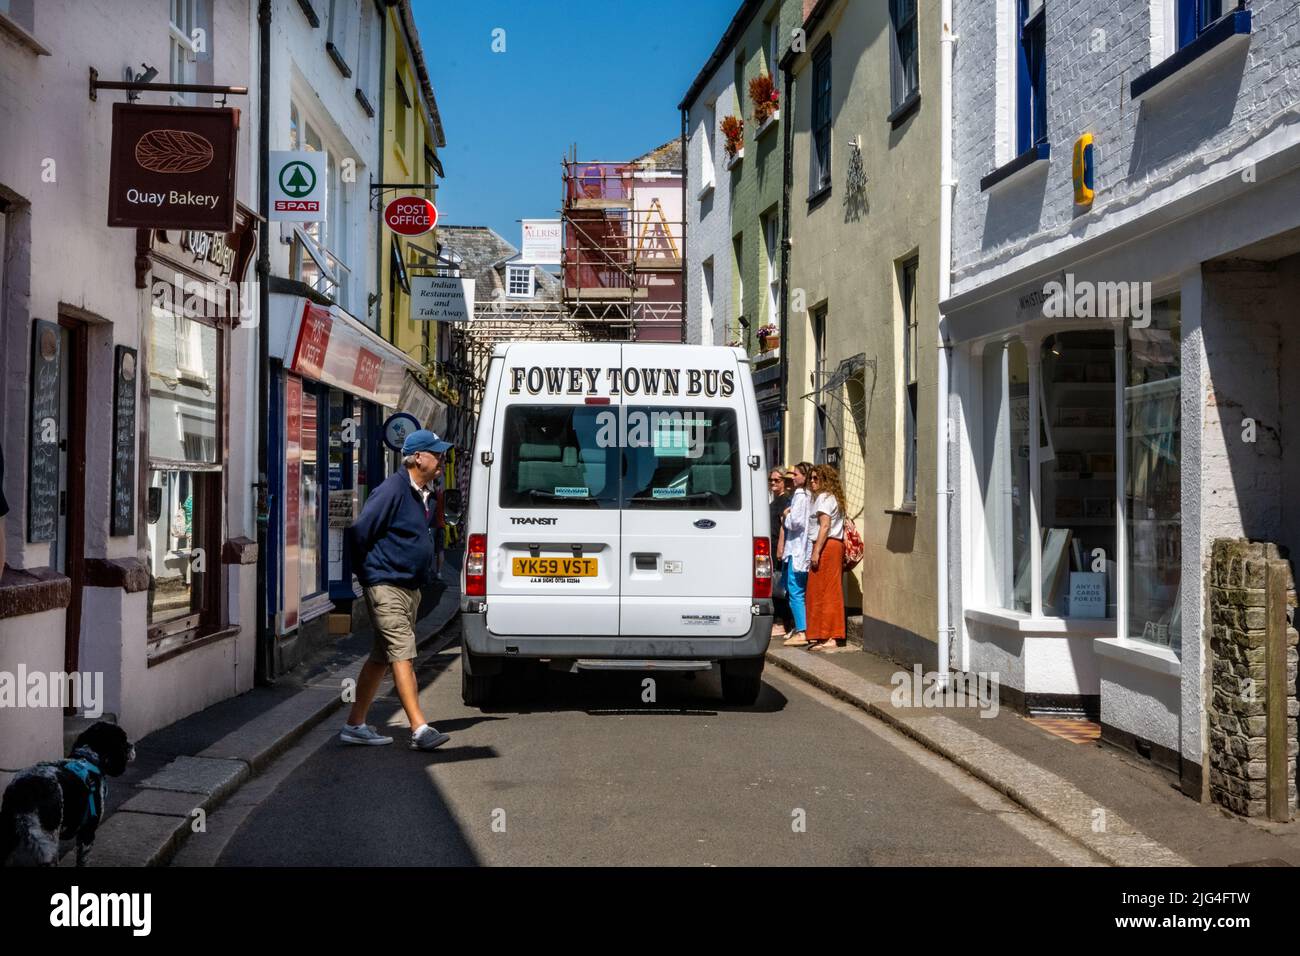 El autobús de la ciudad de Fowey negocia su manera a través de las calles estrechas, Fowey, Cornwall, Reino Unido Foto de stock